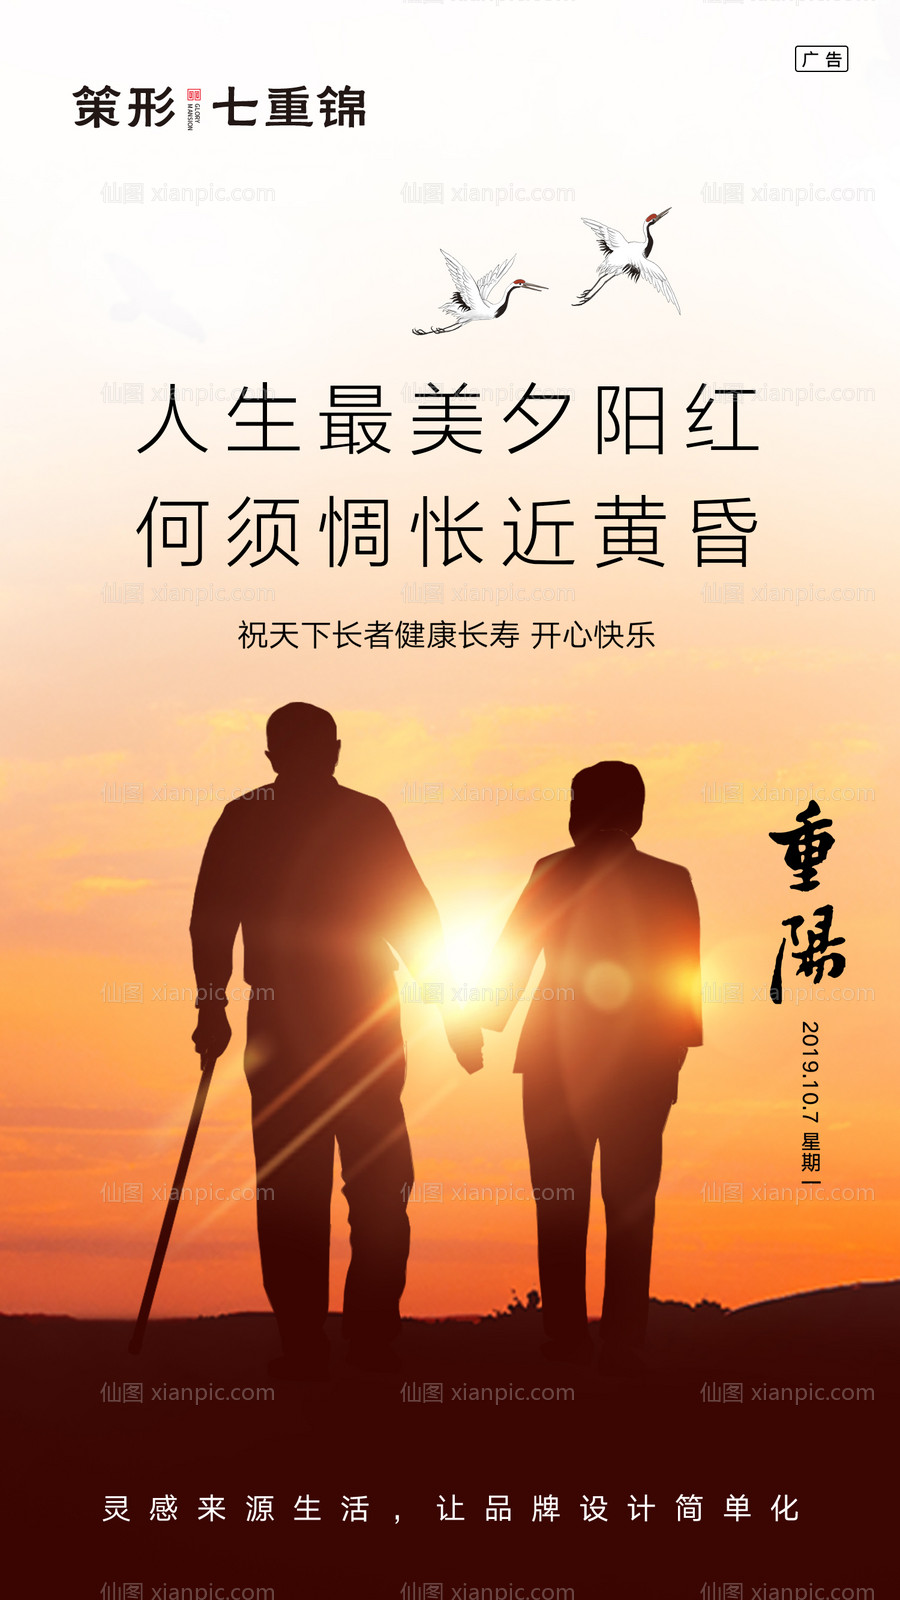 素材乐-传统节日夕阳红重阳节海报